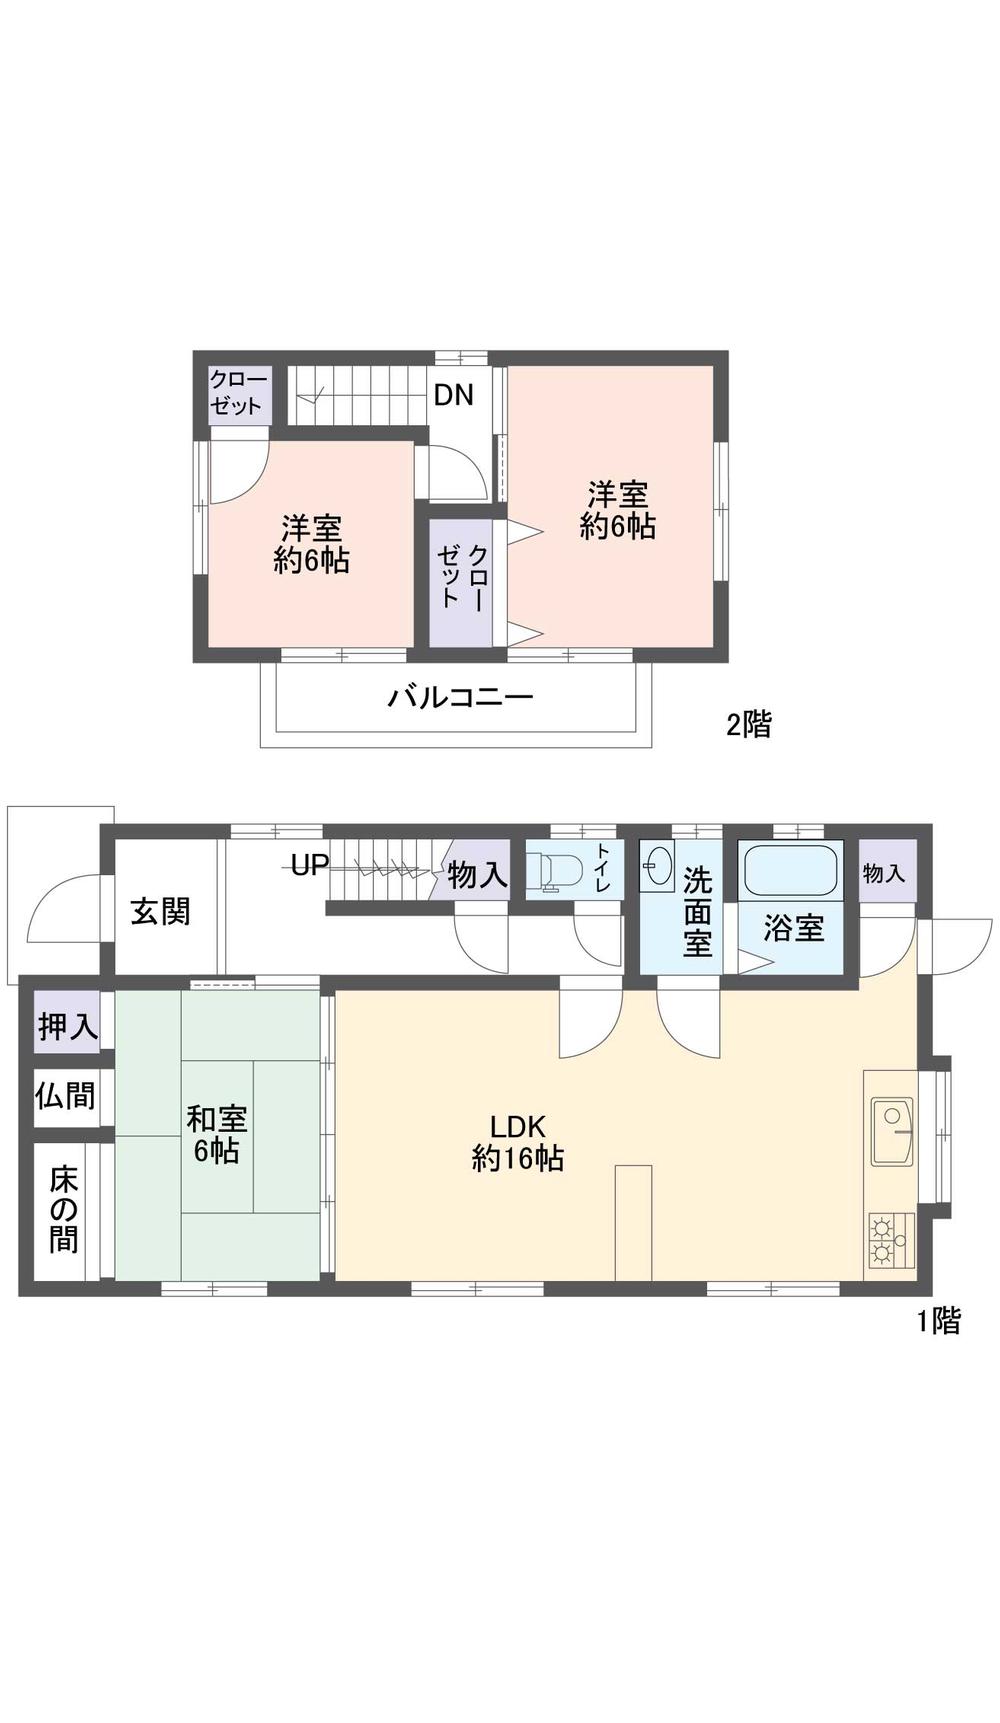 Floor plan. 12.9 million yen, 3LDK, Land area 159.18 sq m , Building area 81.14 sq m